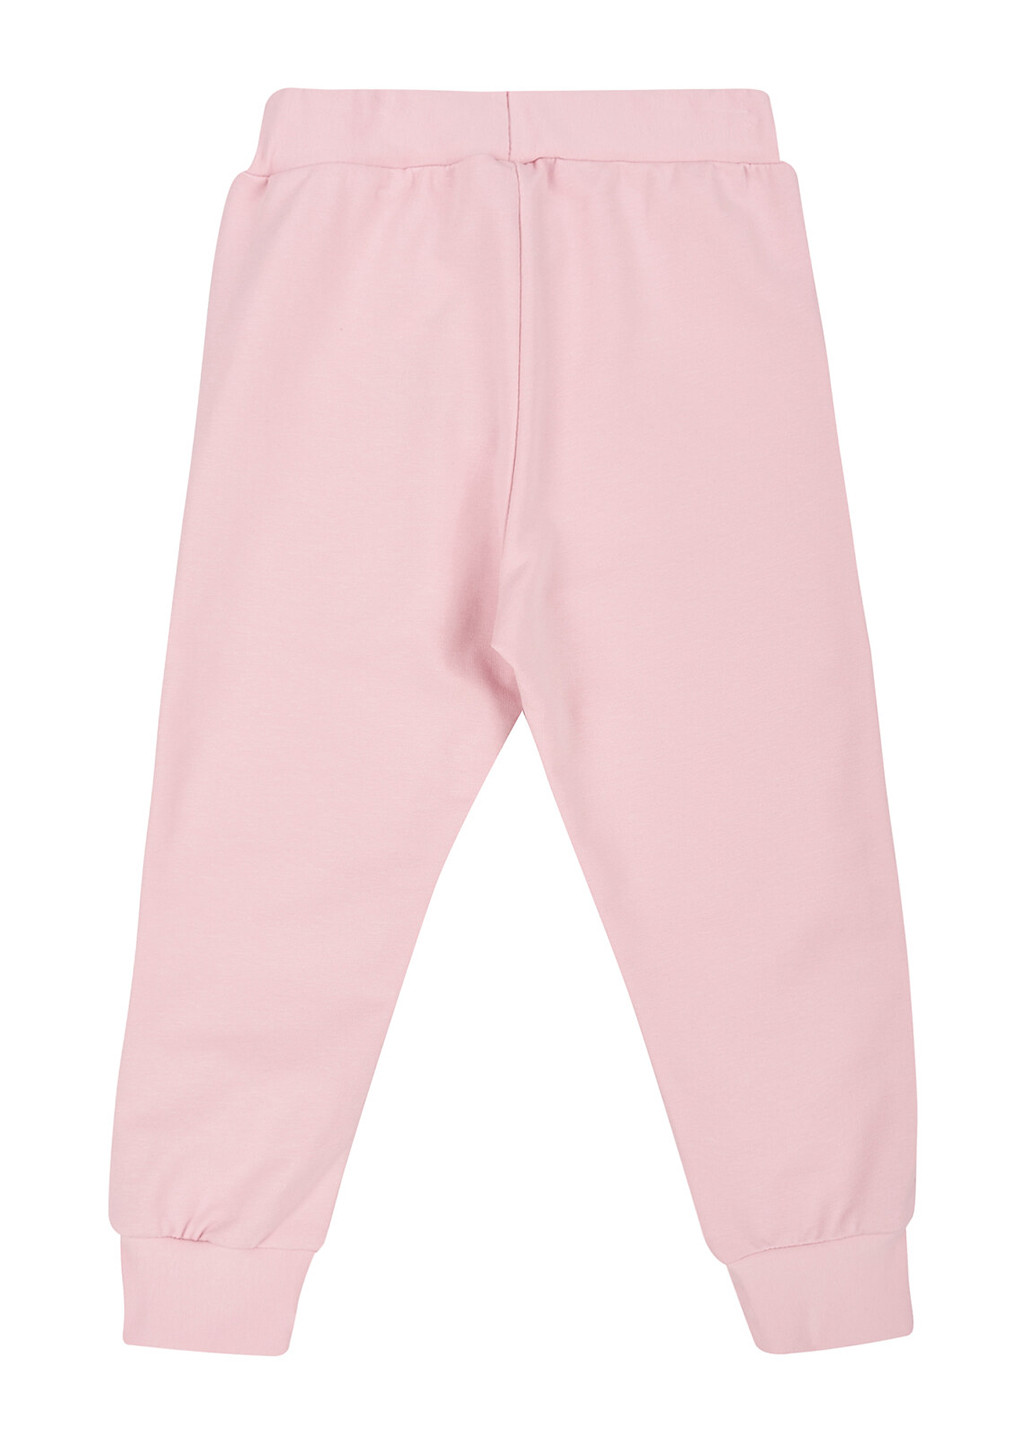 Светло-розовые спортивные демисезонные джоггеры брюки Z16